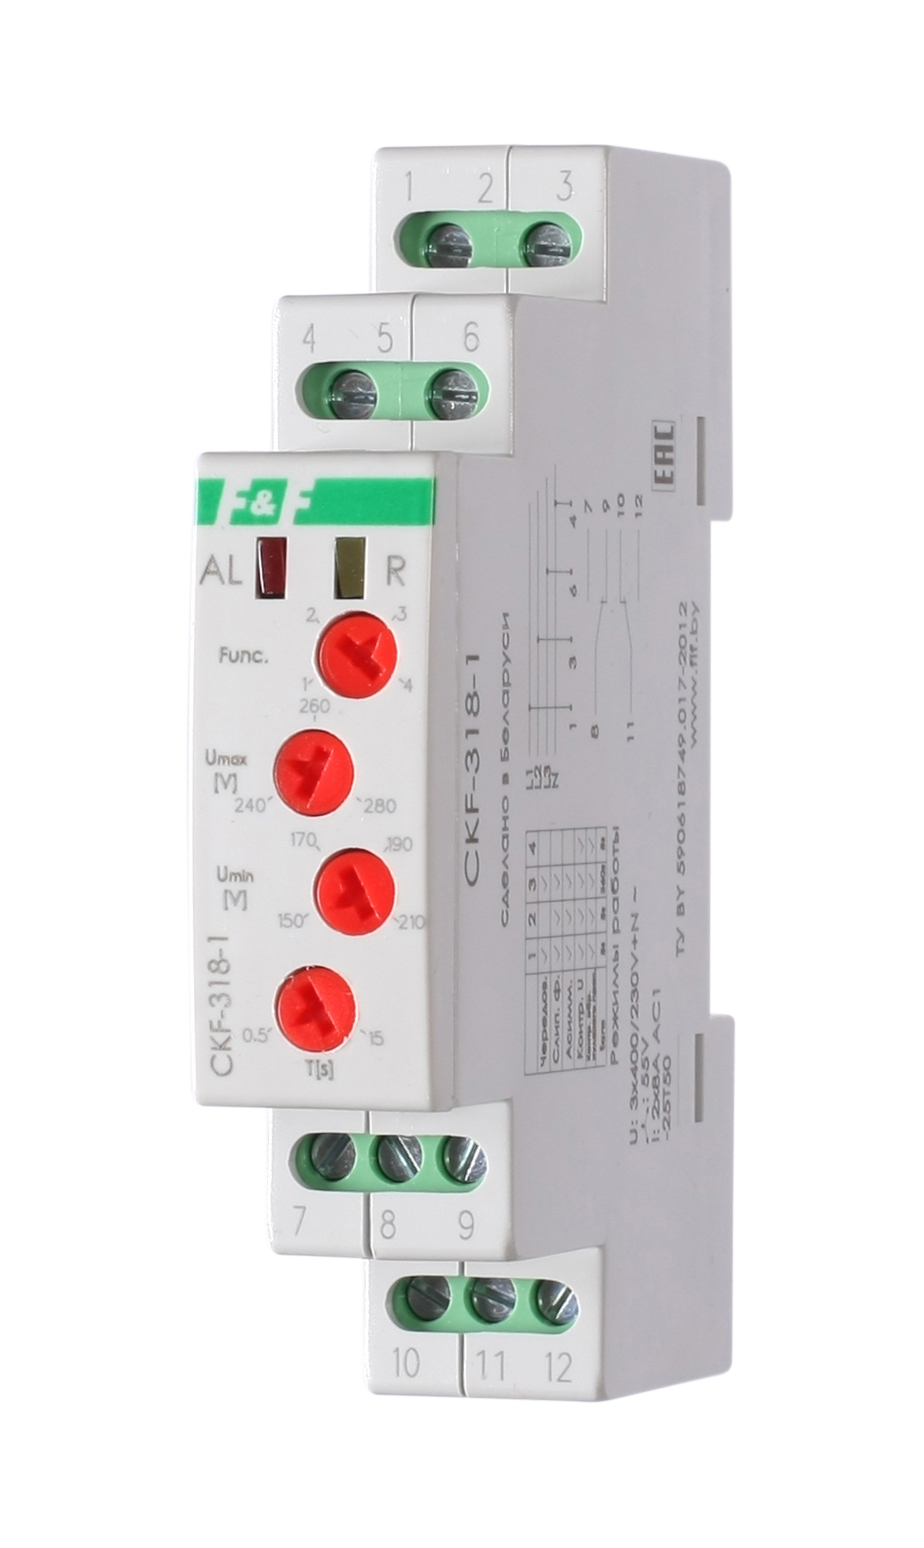 Реле контроля фаз и напряжения CKF-318-1 трехфазное регулируемое, переключение выбора режи реле контроля напряжения tele